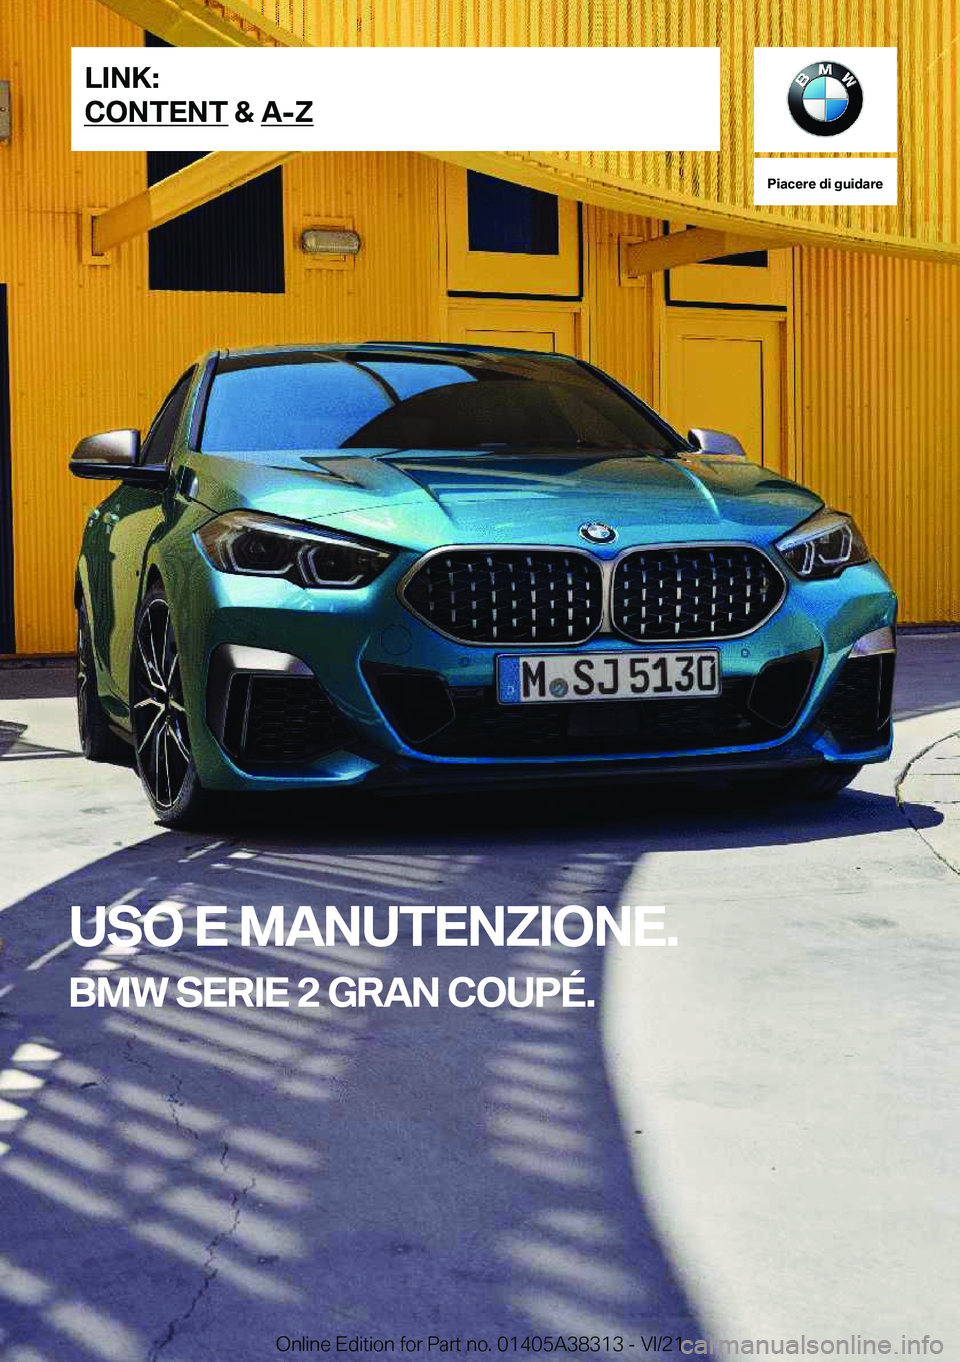 BMW 2 SERIES GRAN COUPE 2022  Libretti Di Uso E manutenzione (in Italian) �P�i�a�c�e�r�e��d�i��g�u�i�d�a�r�e
�U�S�O��E��M�A�N�U�T�E�N�Z�I�O�N�E�.
�B�M�W��S�E�R�I�E��2��G�R�A�N��C�O�U�P�